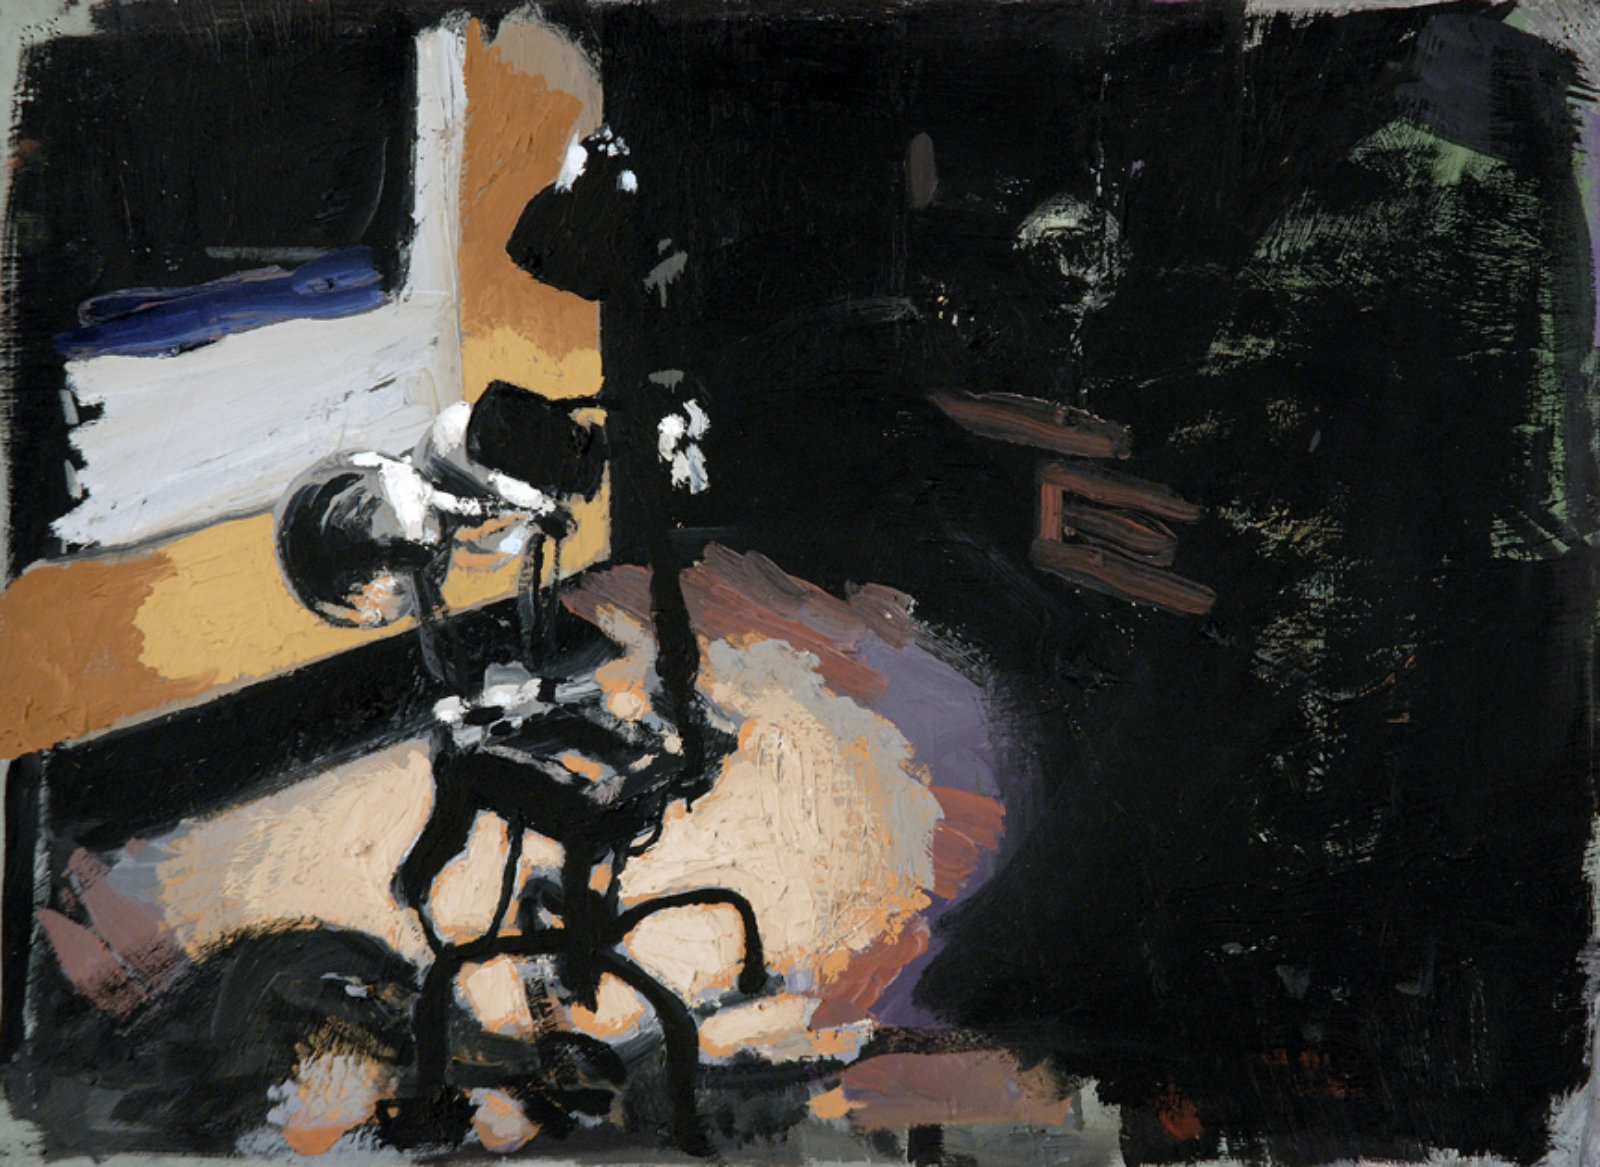 Damian Moppett, Lamps, 2006, oil on paper, 19 x 24 in. (48 x 61 cm)